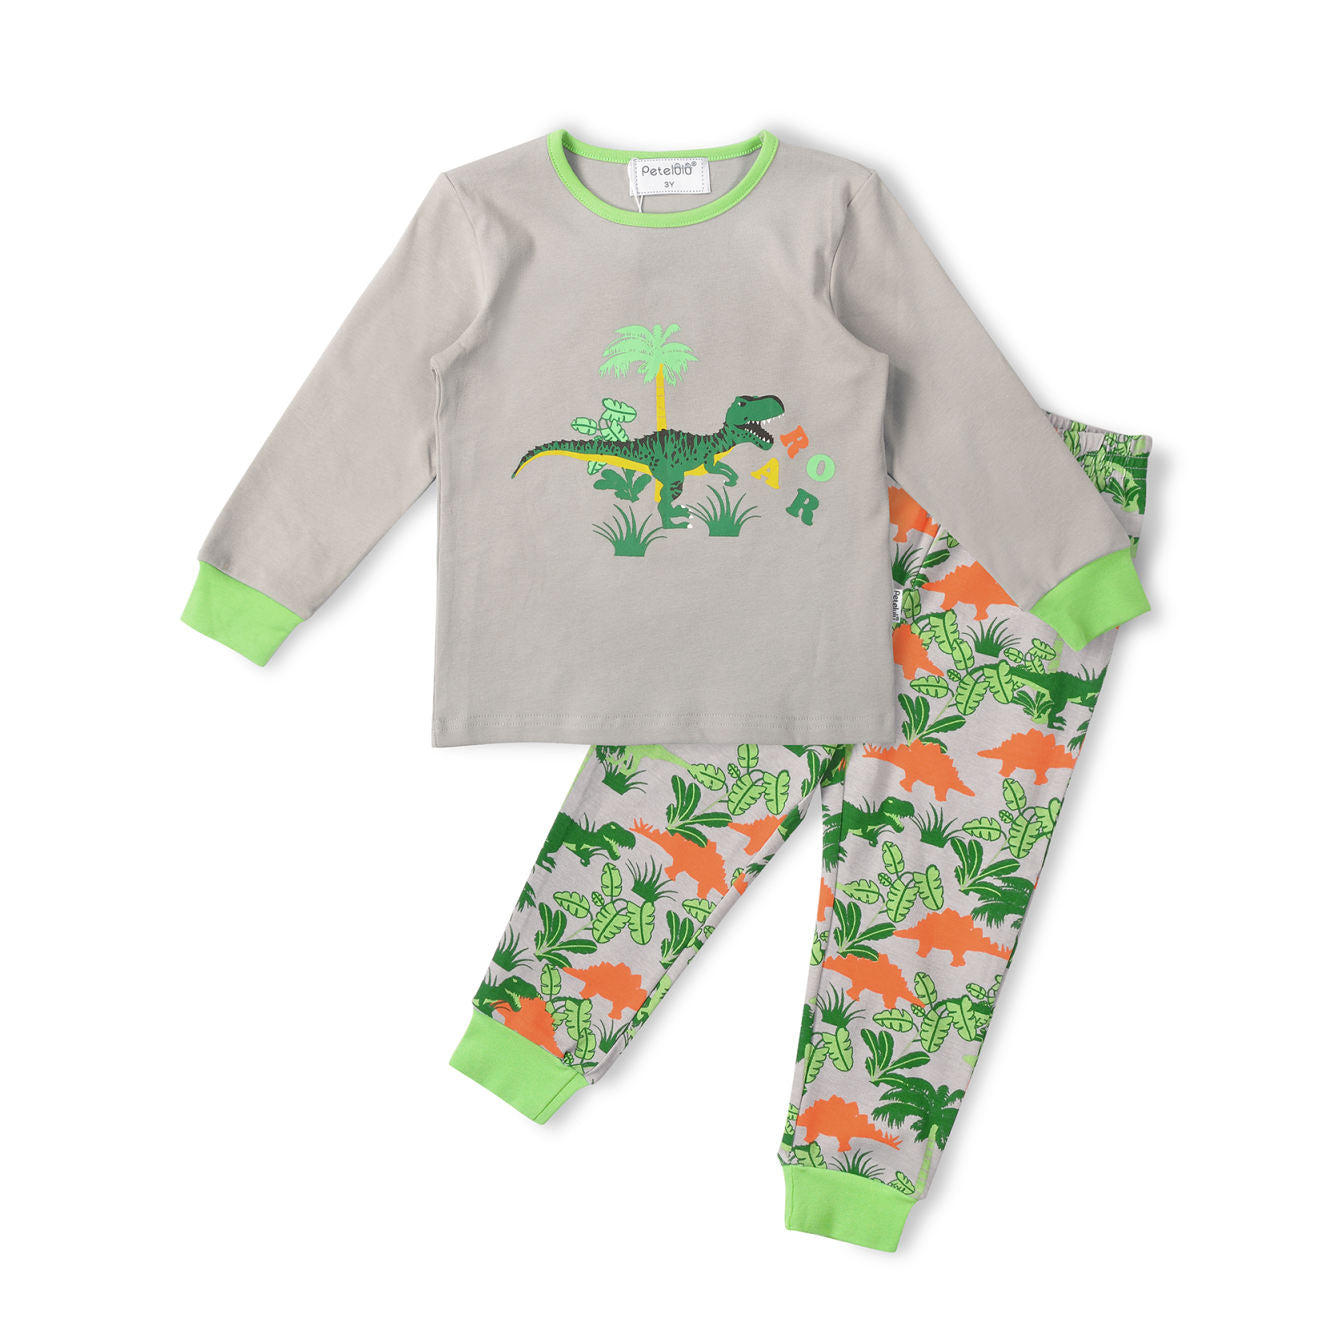 Toddler Boys' Cotton Jersey Pajamas - Dinosaur graphic